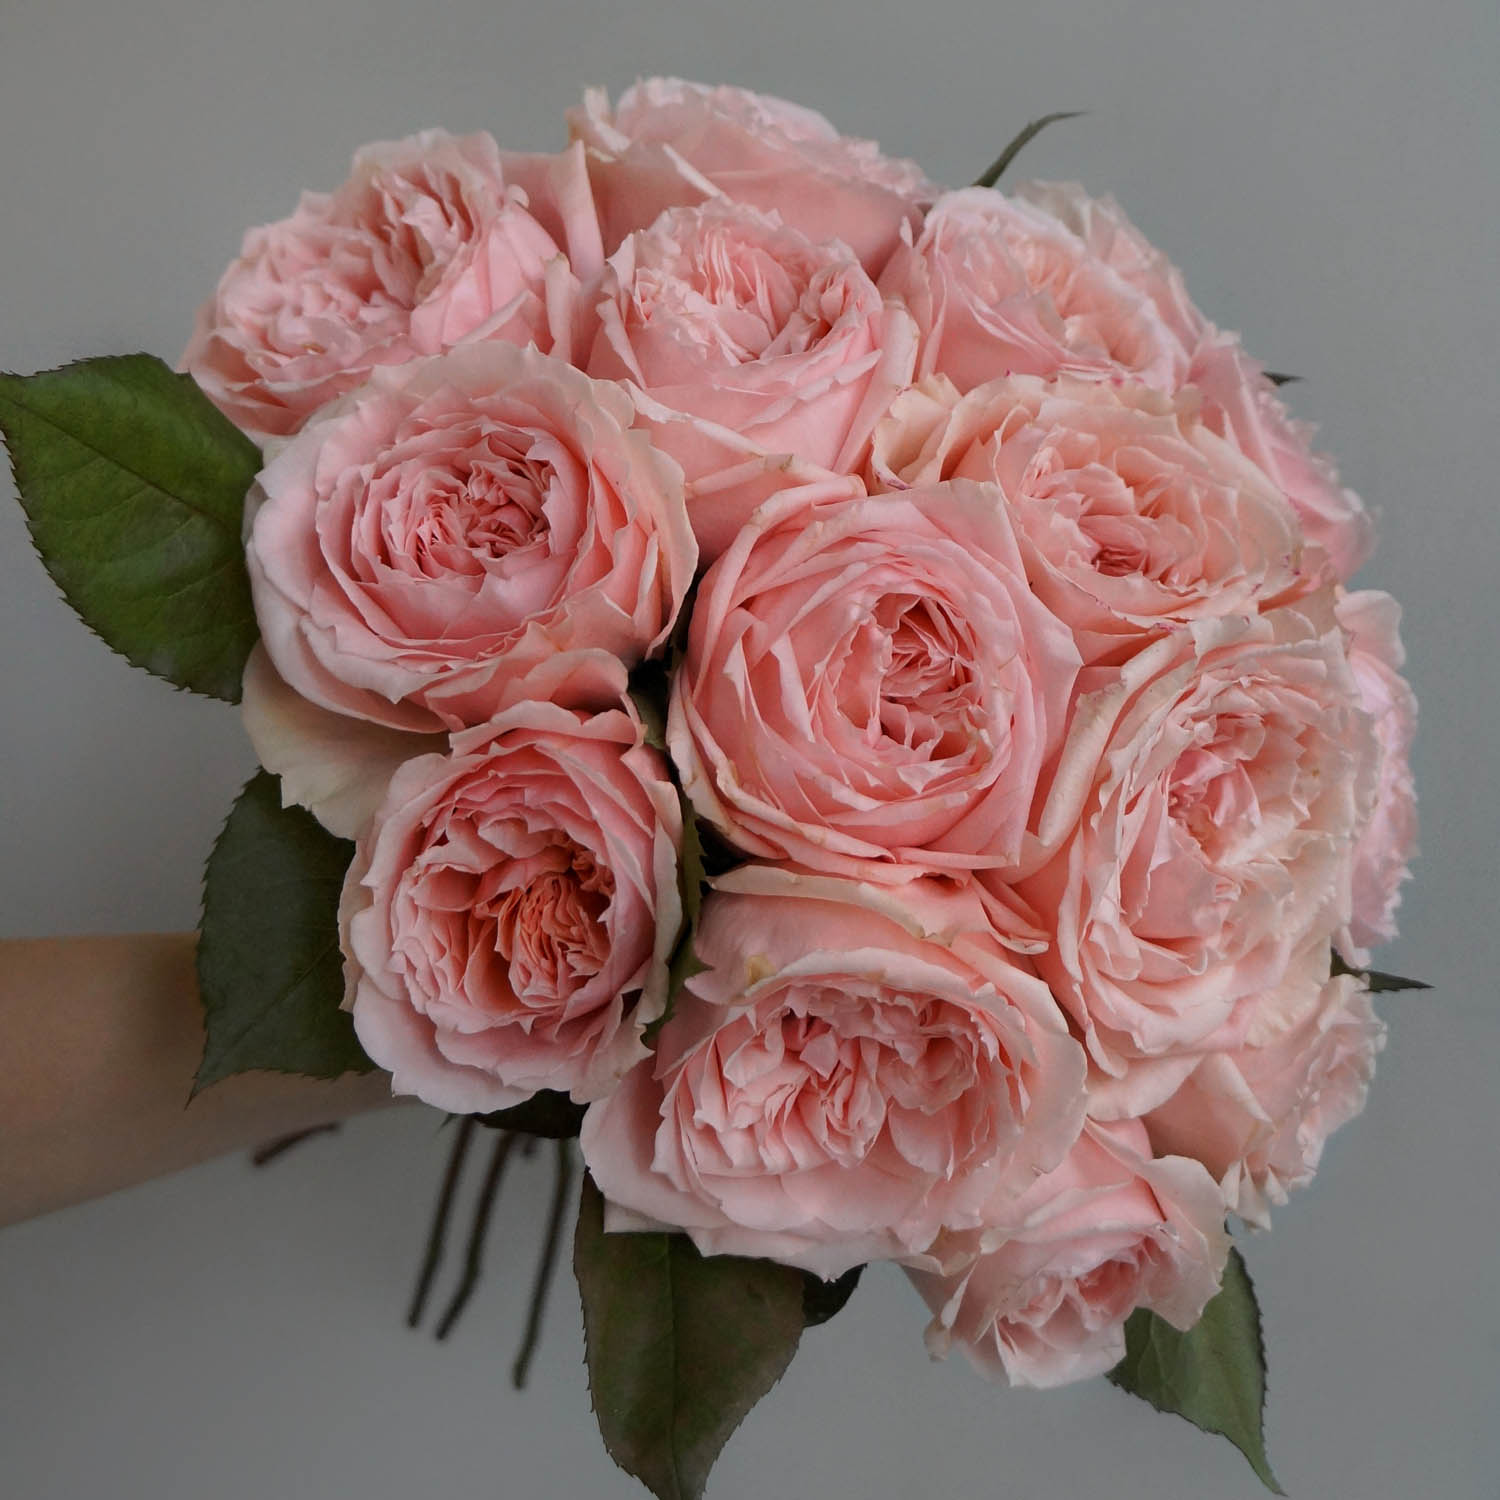 букет садовых роз пастельных розовых оттенков